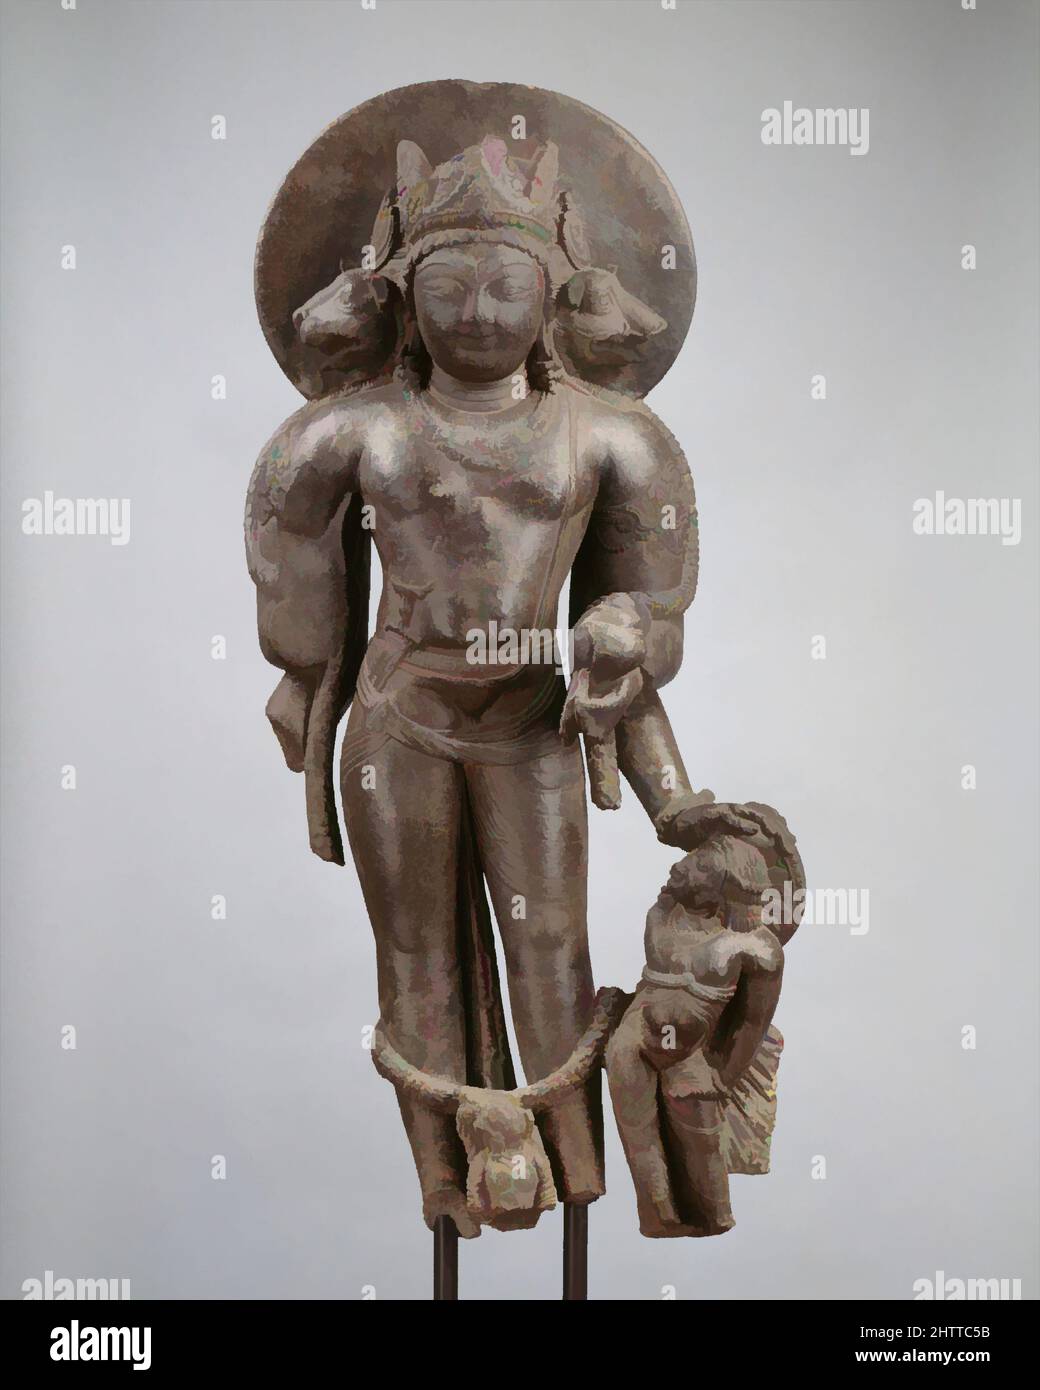 Arte ispirata da Vaikuntha Vishnu, ultimo quarto del 8th secolo, India (Jammu & Kashmir, antico regno del Kashmir), pietra, H. 41 1/8 in. (104,5 cm), scultura, questa forma complessa di Vishnu, prima chiamata con il nome di Vaikuntha nel VII secolo Vishnudharmotttarapurana, IS, opere classiche modernizzate da Artotop con un tuffo di modernità. Forme, colore e valore, impatto visivo accattivante sulle emozioni artistiche attraverso la libertà delle opere d'arte in modo contemporaneo. Un messaggio senza tempo che persegue una nuova direzione selvaggiamente creativa. Artisti che si rivolgono al supporto digitale e creano l'NFT Artotop Foto Stock